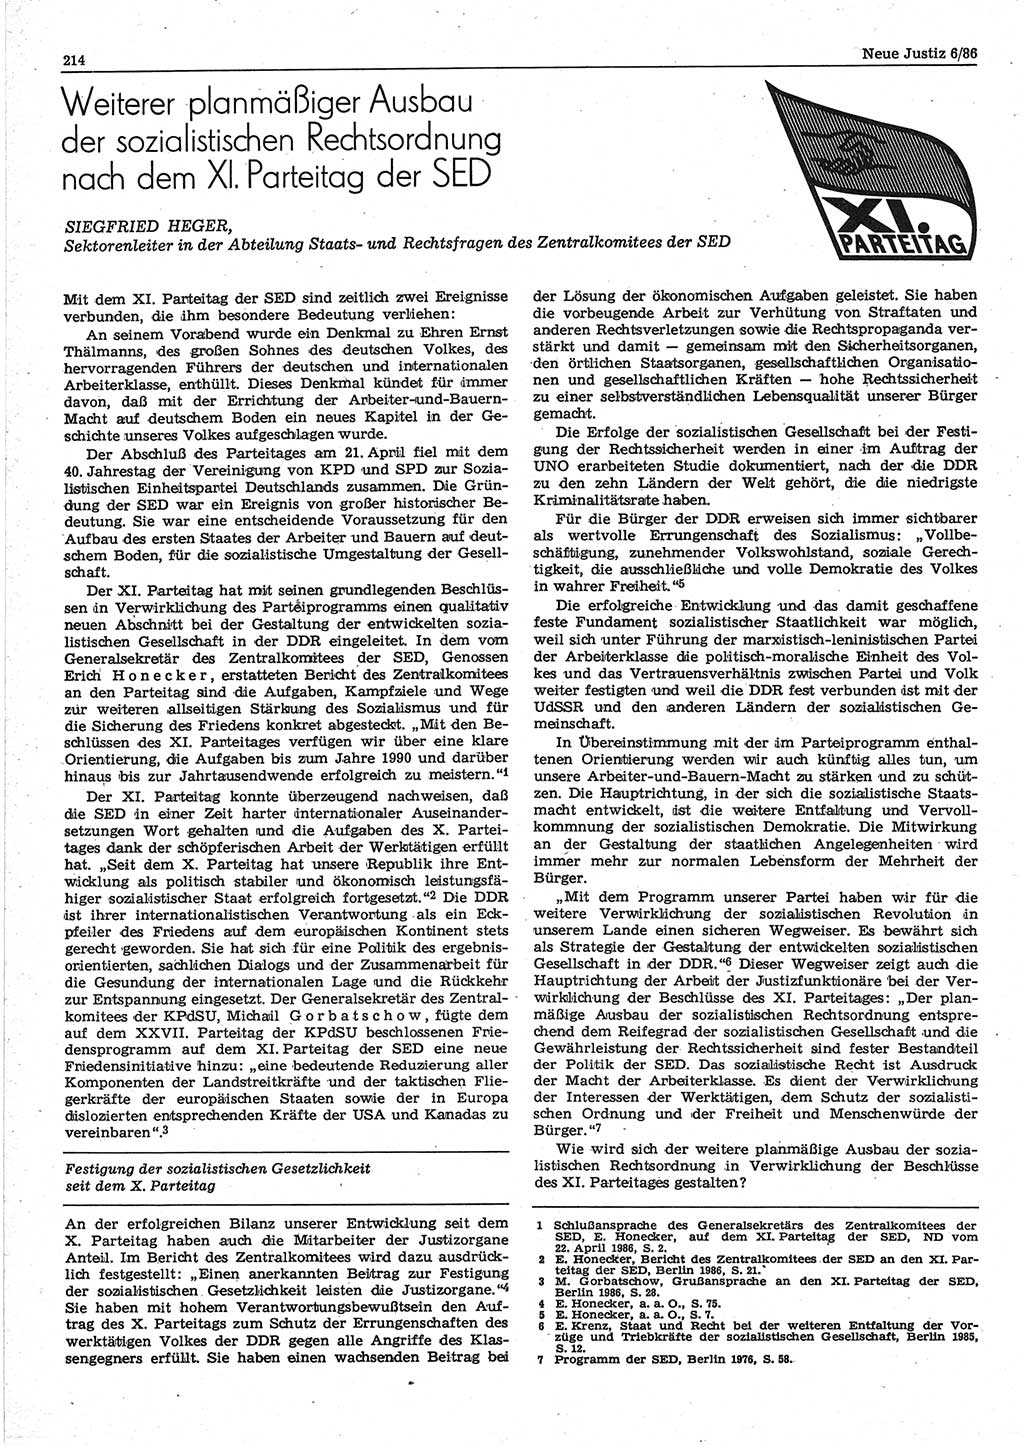 Neue Justiz (NJ), Zeitschrift für sozialistisches Recht und Gesetzlichkeit [Deutsche Demokratische Republik (DDR)], 40. Jahrgang 1986, Seite 214 (NJ DDR 1986, S. 214)